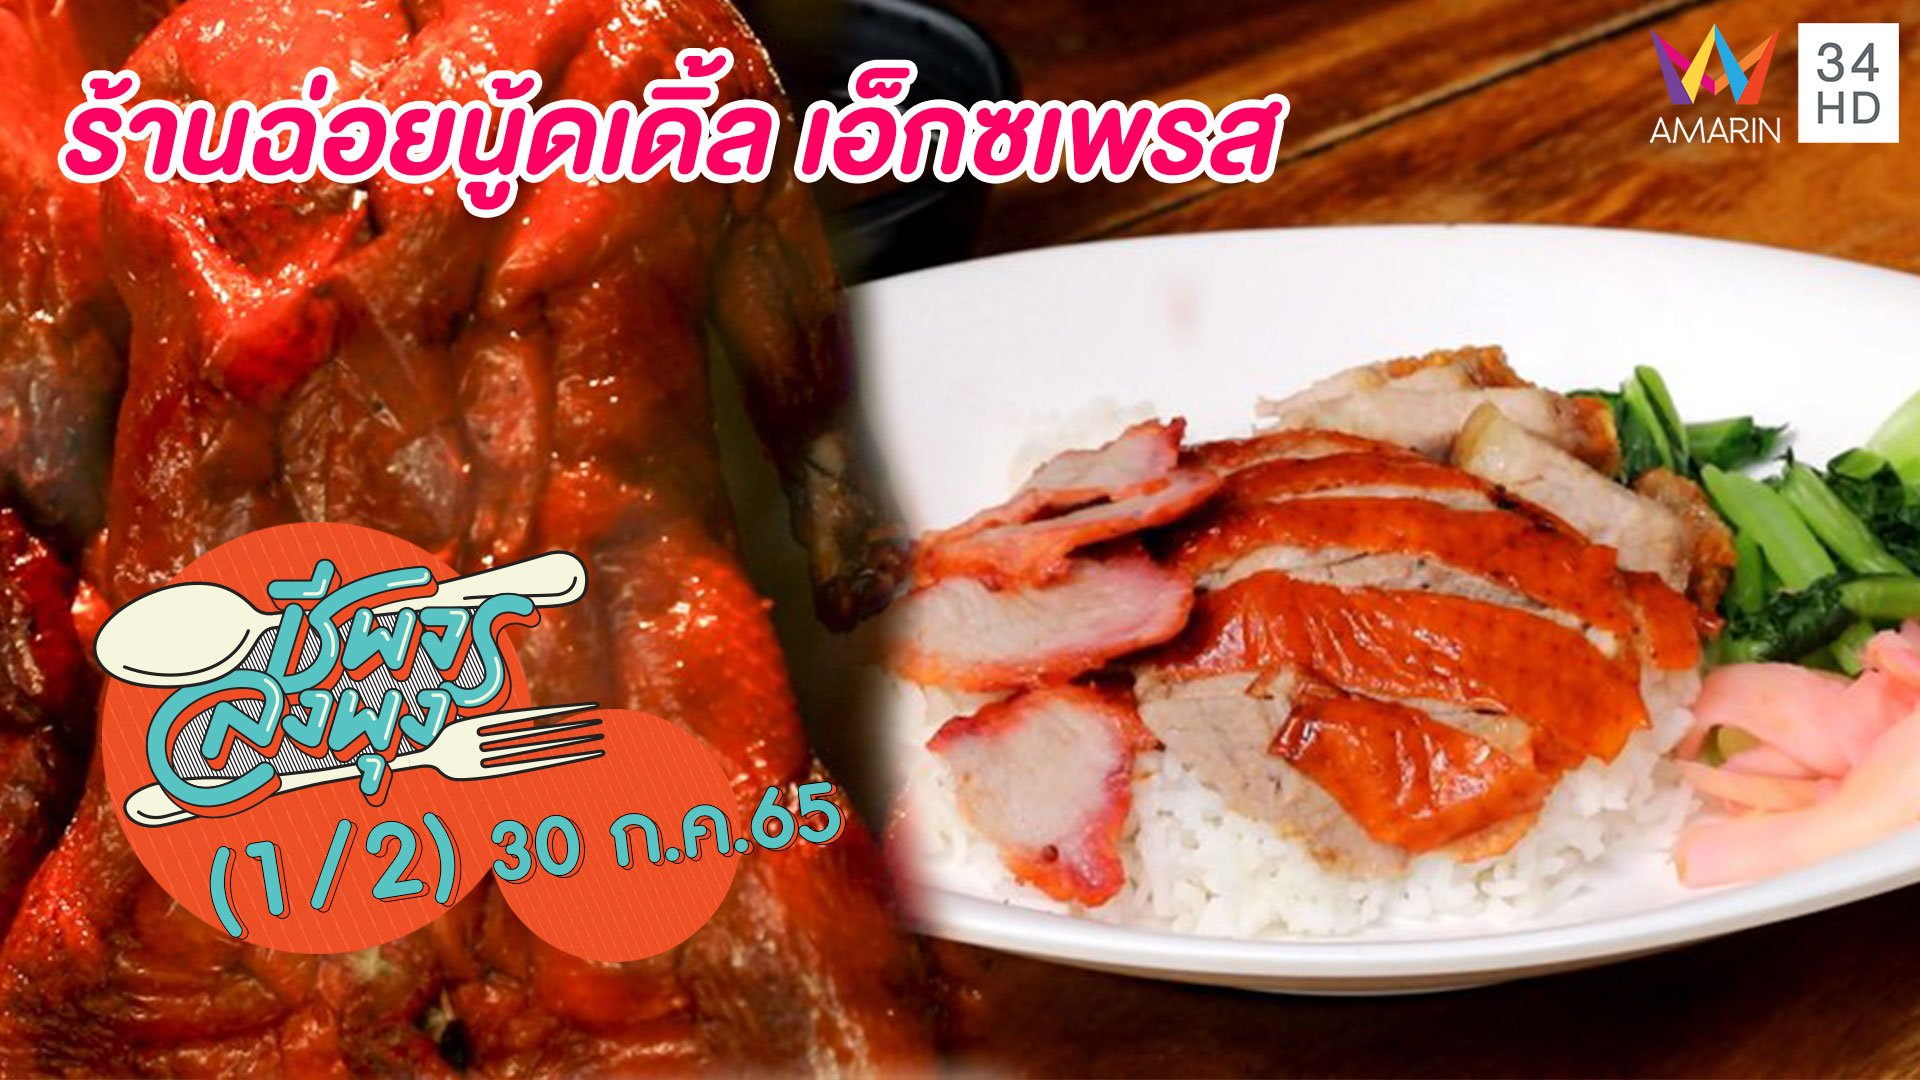 กินง่ายอร่อยทุกเมนู @ร้านฉ่อยนู้ดเดิ้ล เอ็กซเพรส | ชีพจรลงพุง | 30 ก.ค. 65 (1/2) | AMARIN TVHD34